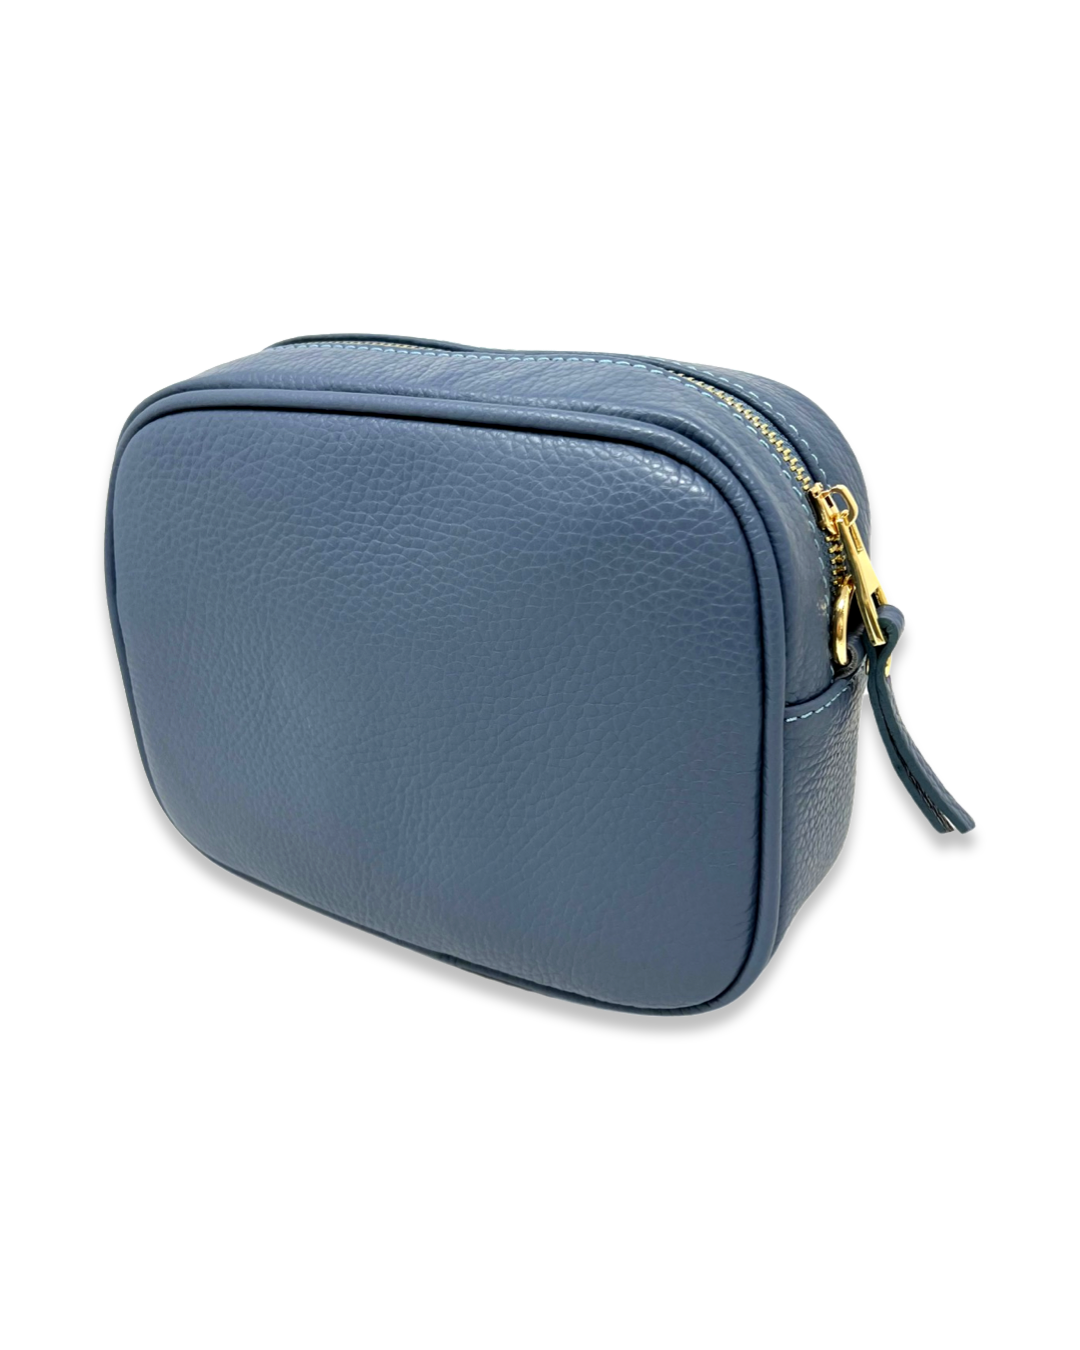 Firenze Bag in Denim Blue